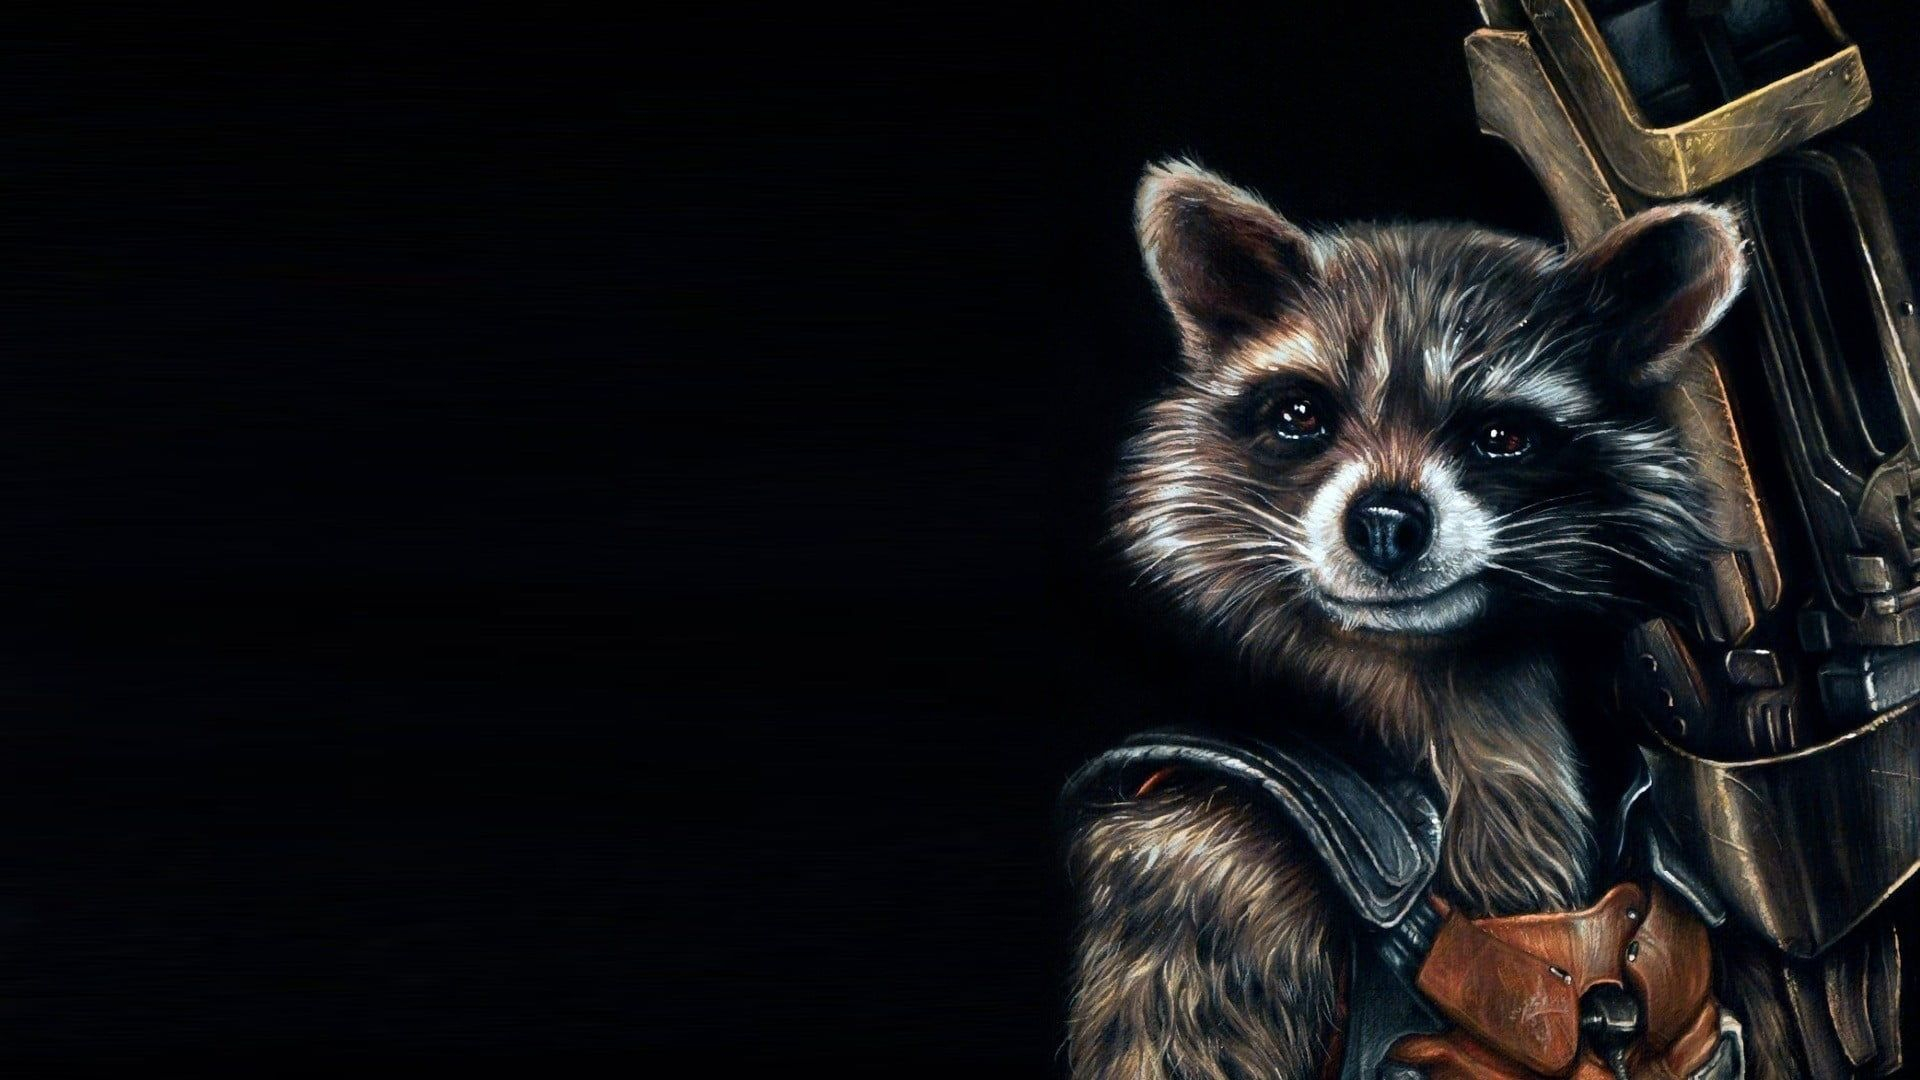 1920x1080 Guardians of the Galaxy Rocket Raccoon digital wallpaper Guardians of the Galaxy #comics #movies Rocket Raccoon &acirc;&#128;&brvbar; | Rocket raccoon, Guardians of the galaxy, Racc